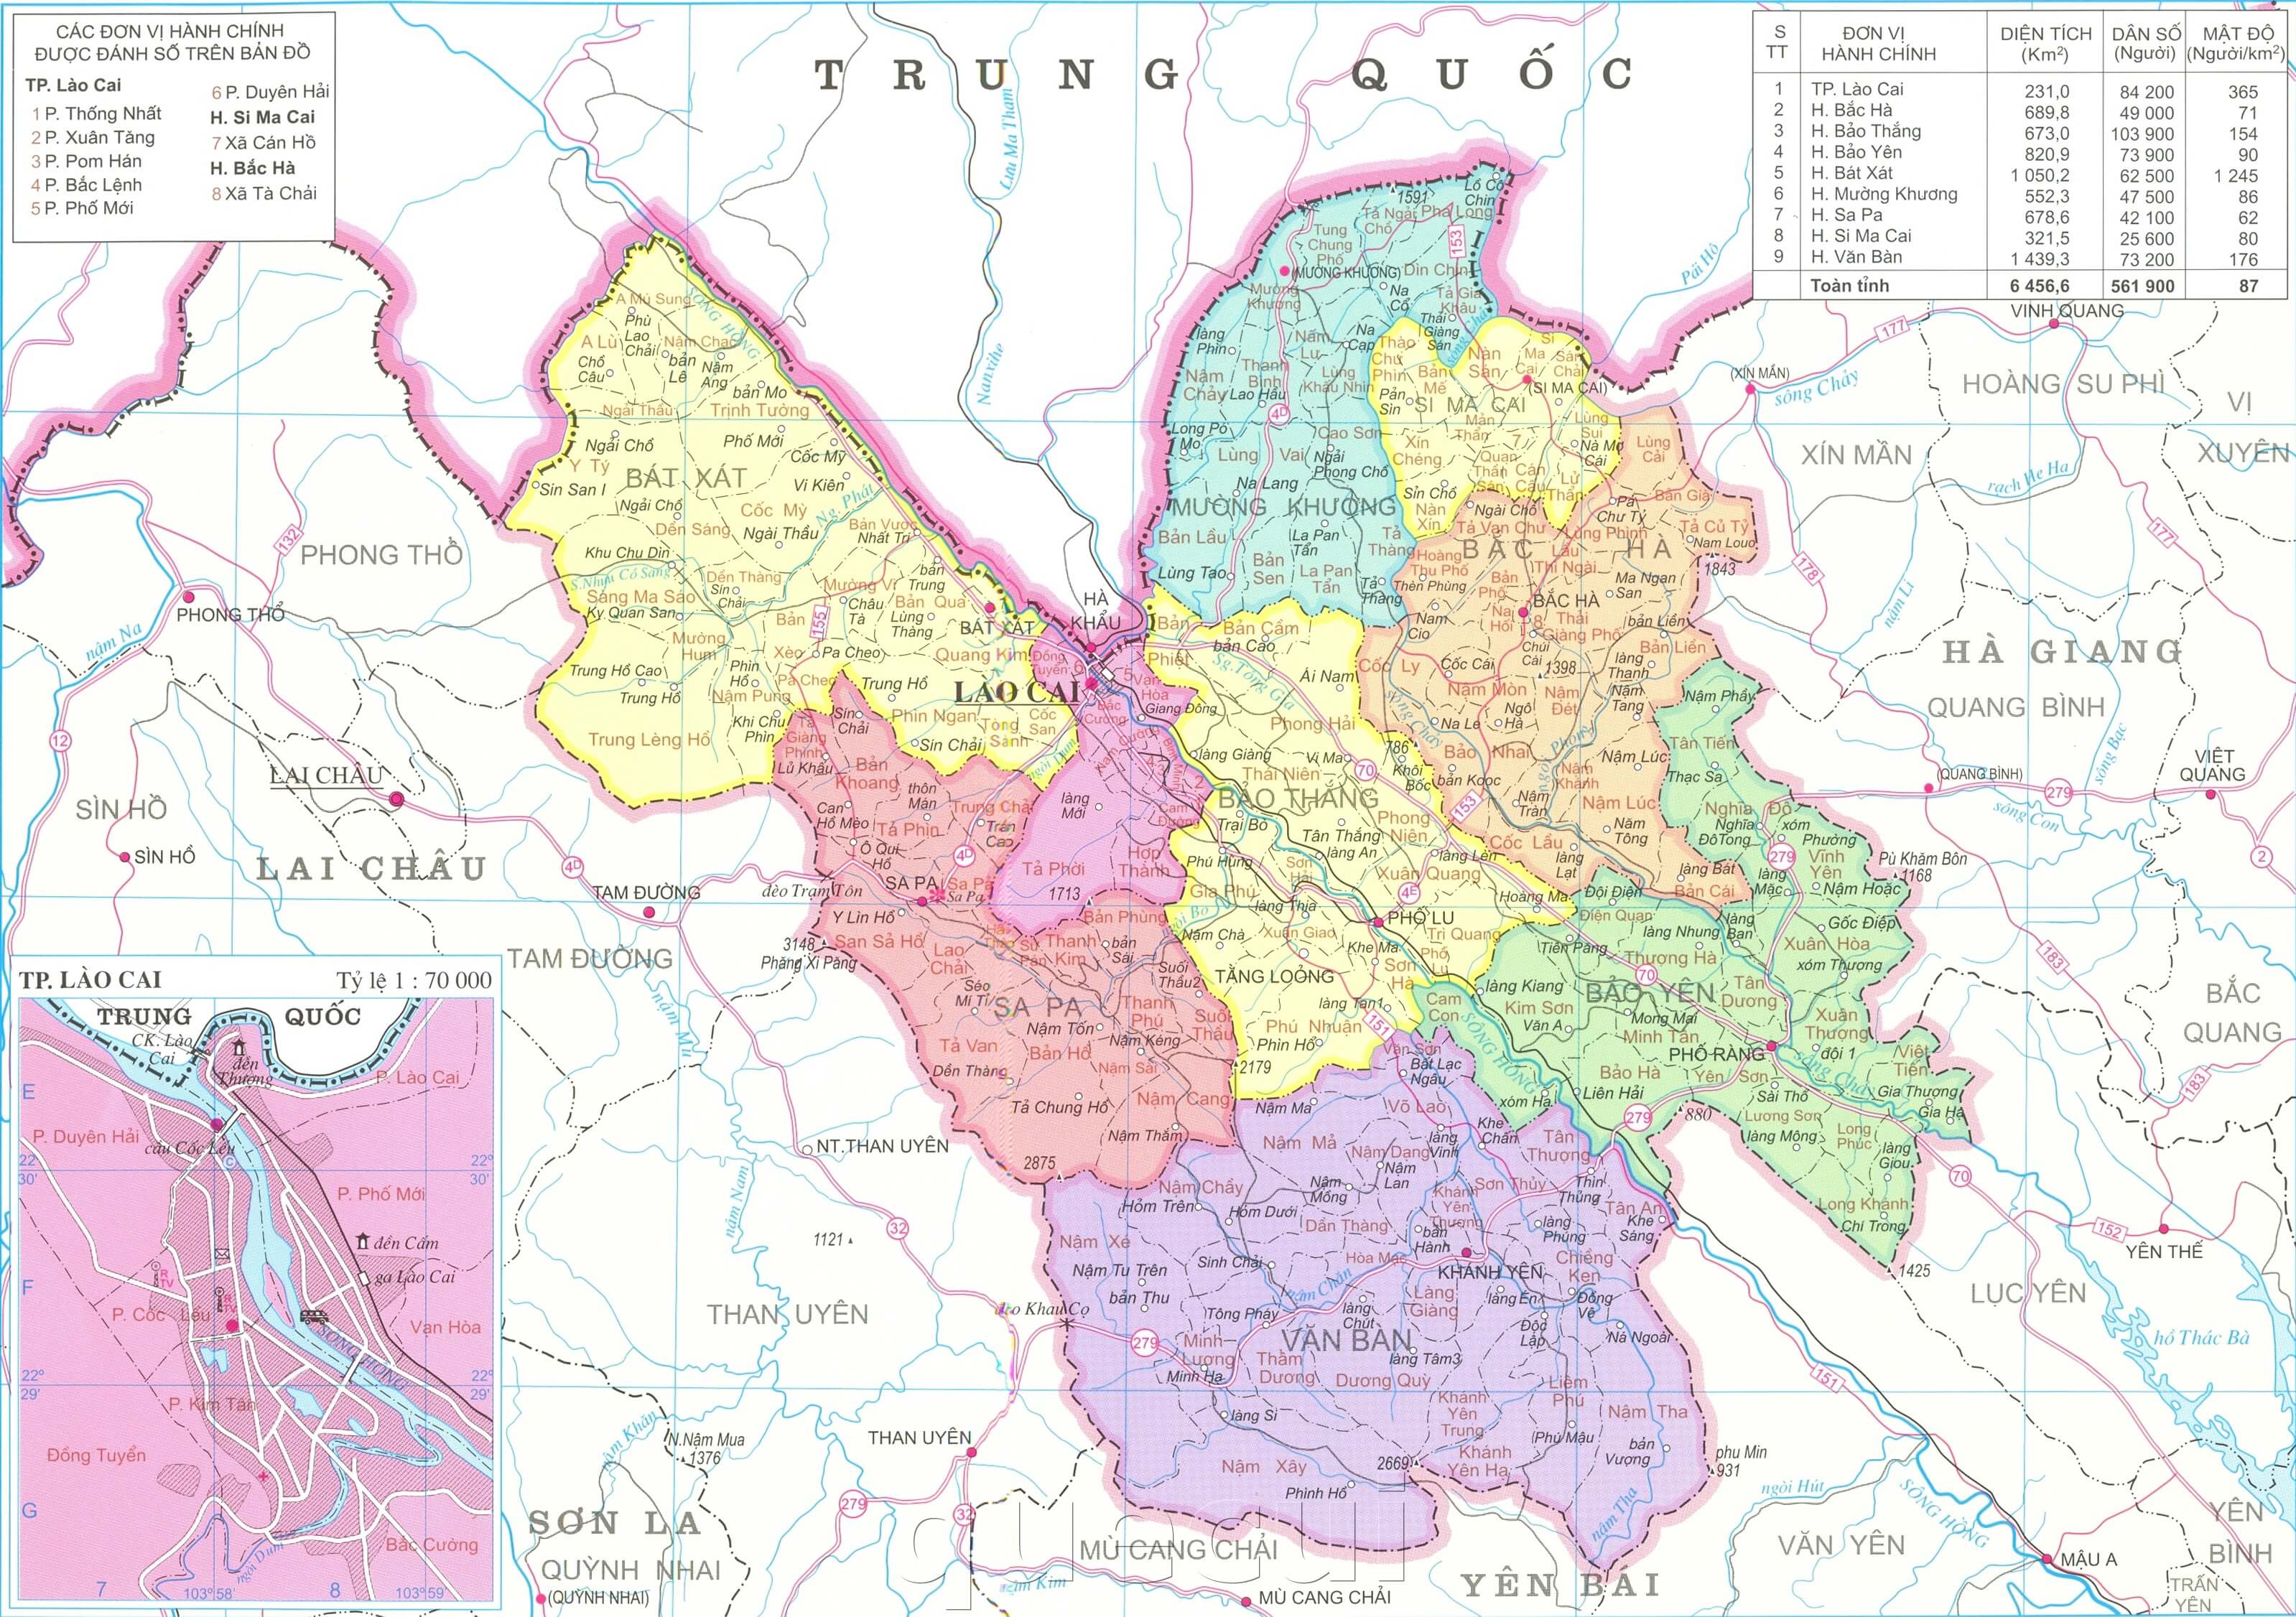 Bản đồ Lào Cai năm 2024: Cập nhật bản đồ Lào Cai năm 2024 để biết thêm về các kế hoạch phát triển hấp dẫn, các điểm du lịch tuyệt vời và những bí mật của Lào Cai. Khám phá sự đổi mới và tiềm năng của thành phố này thông qua các dữ liệu chính thức tại bản đồ Lào Cai năm